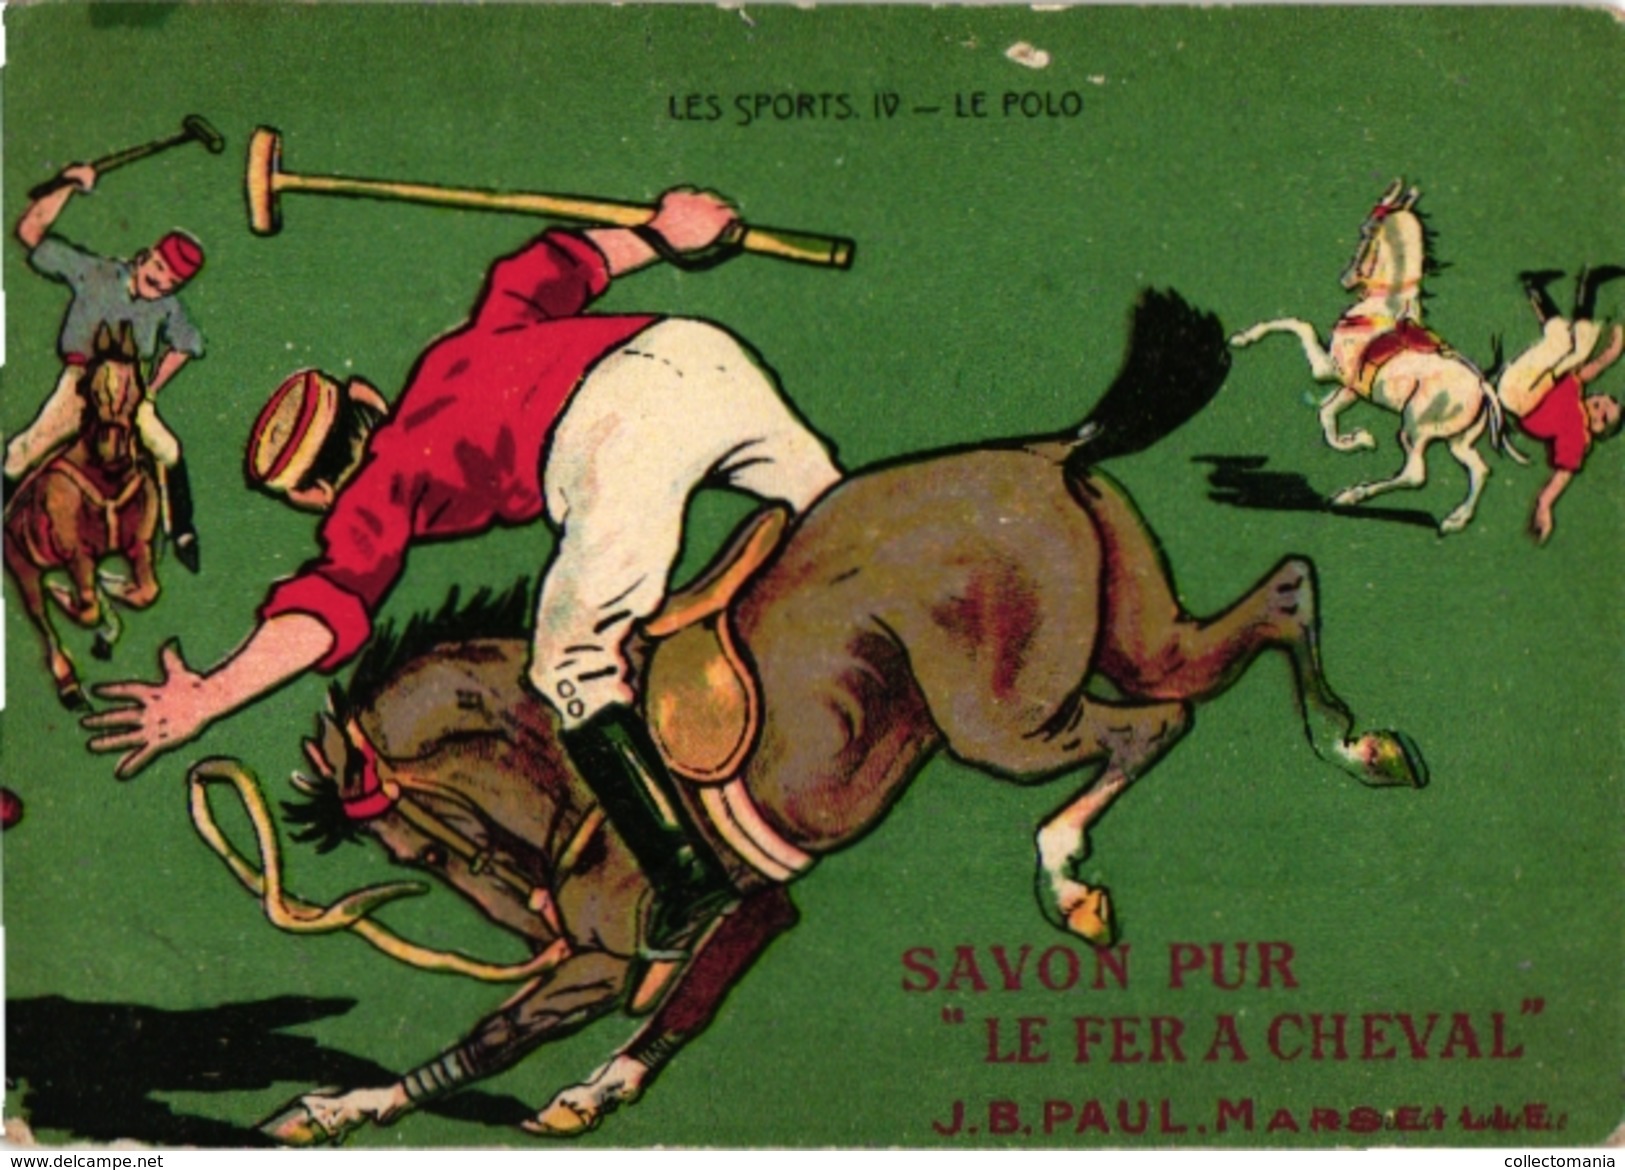 3 Trade Cards Chromo  POLO On Horse Badminton  Pub  Choc Meurisse Savon Le Fer à Cheval La Kabiline 2 Match Box Label - Parachutisme